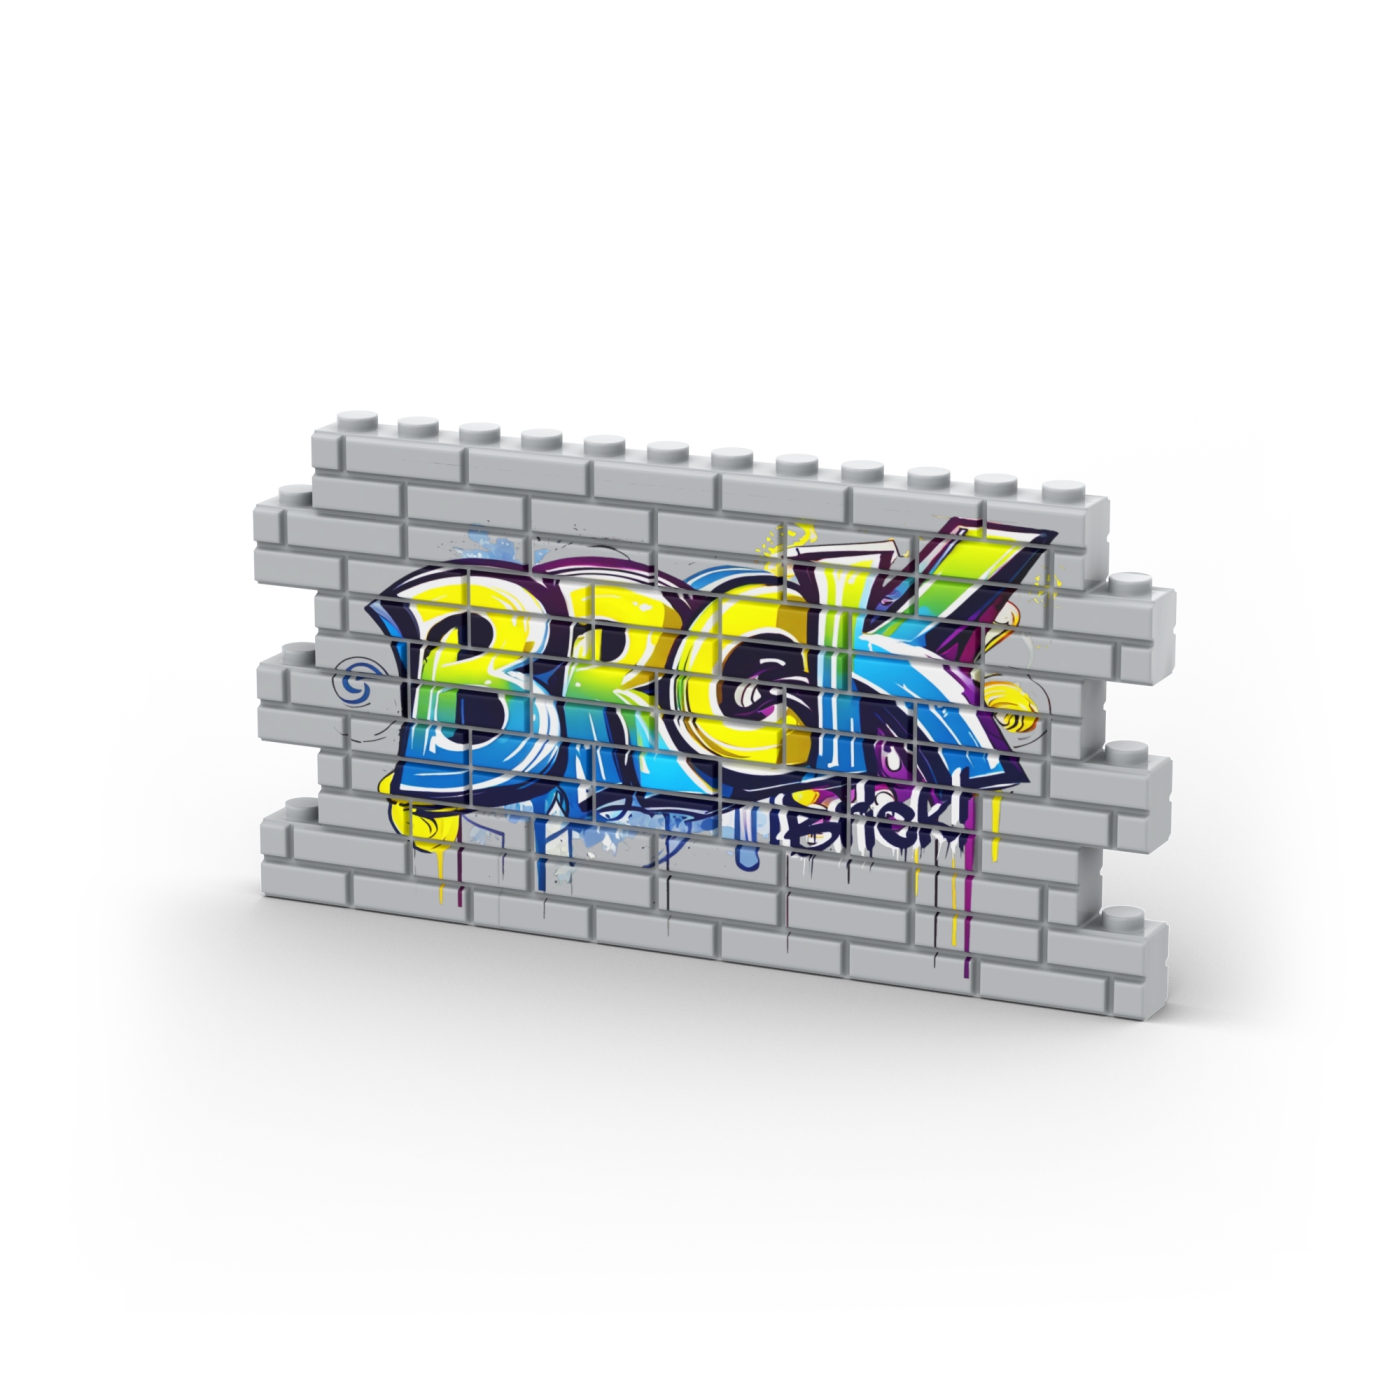 BRCK Graffiti Wall